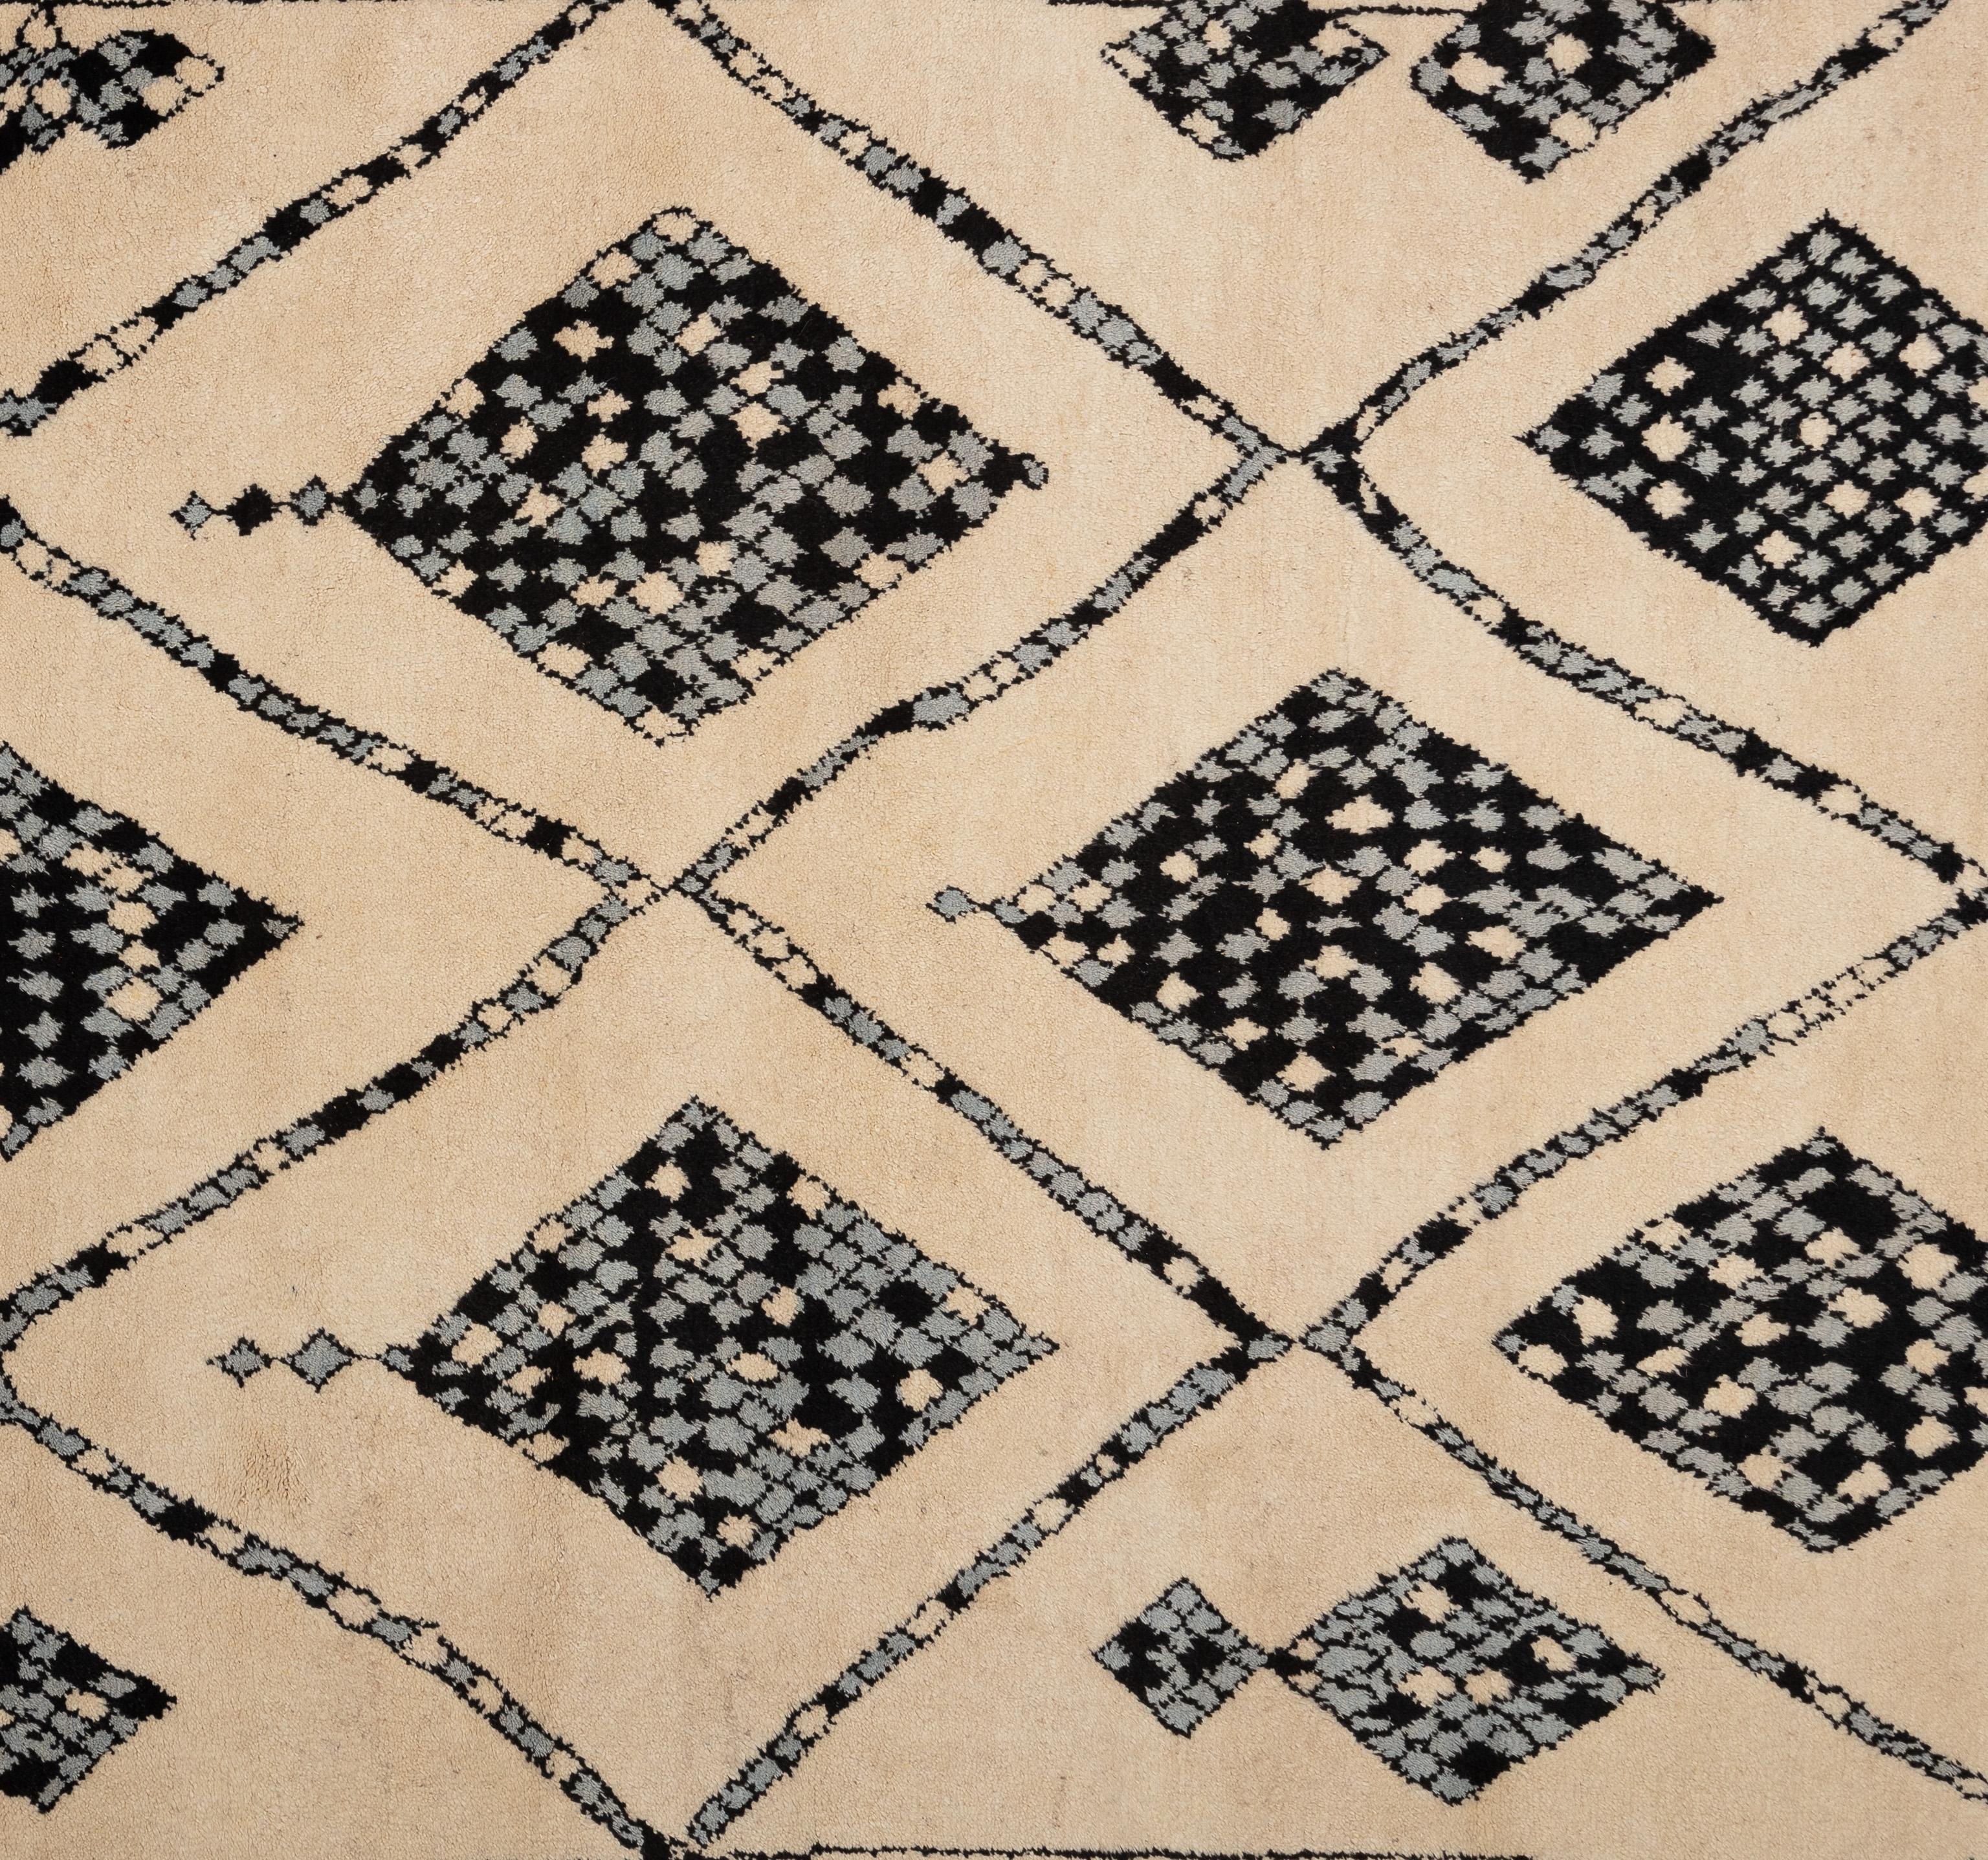 Schöner handgeknüpfter marokkanischer Teppich mit einem dickeren Wollflor in den Farben Elfenbein, Ebenholz und Himmelblau. Dieser Teppich zeichnet sich durch ein kunstvolles All-Over-Tribal-Muster aus. 

Größe - 9'1